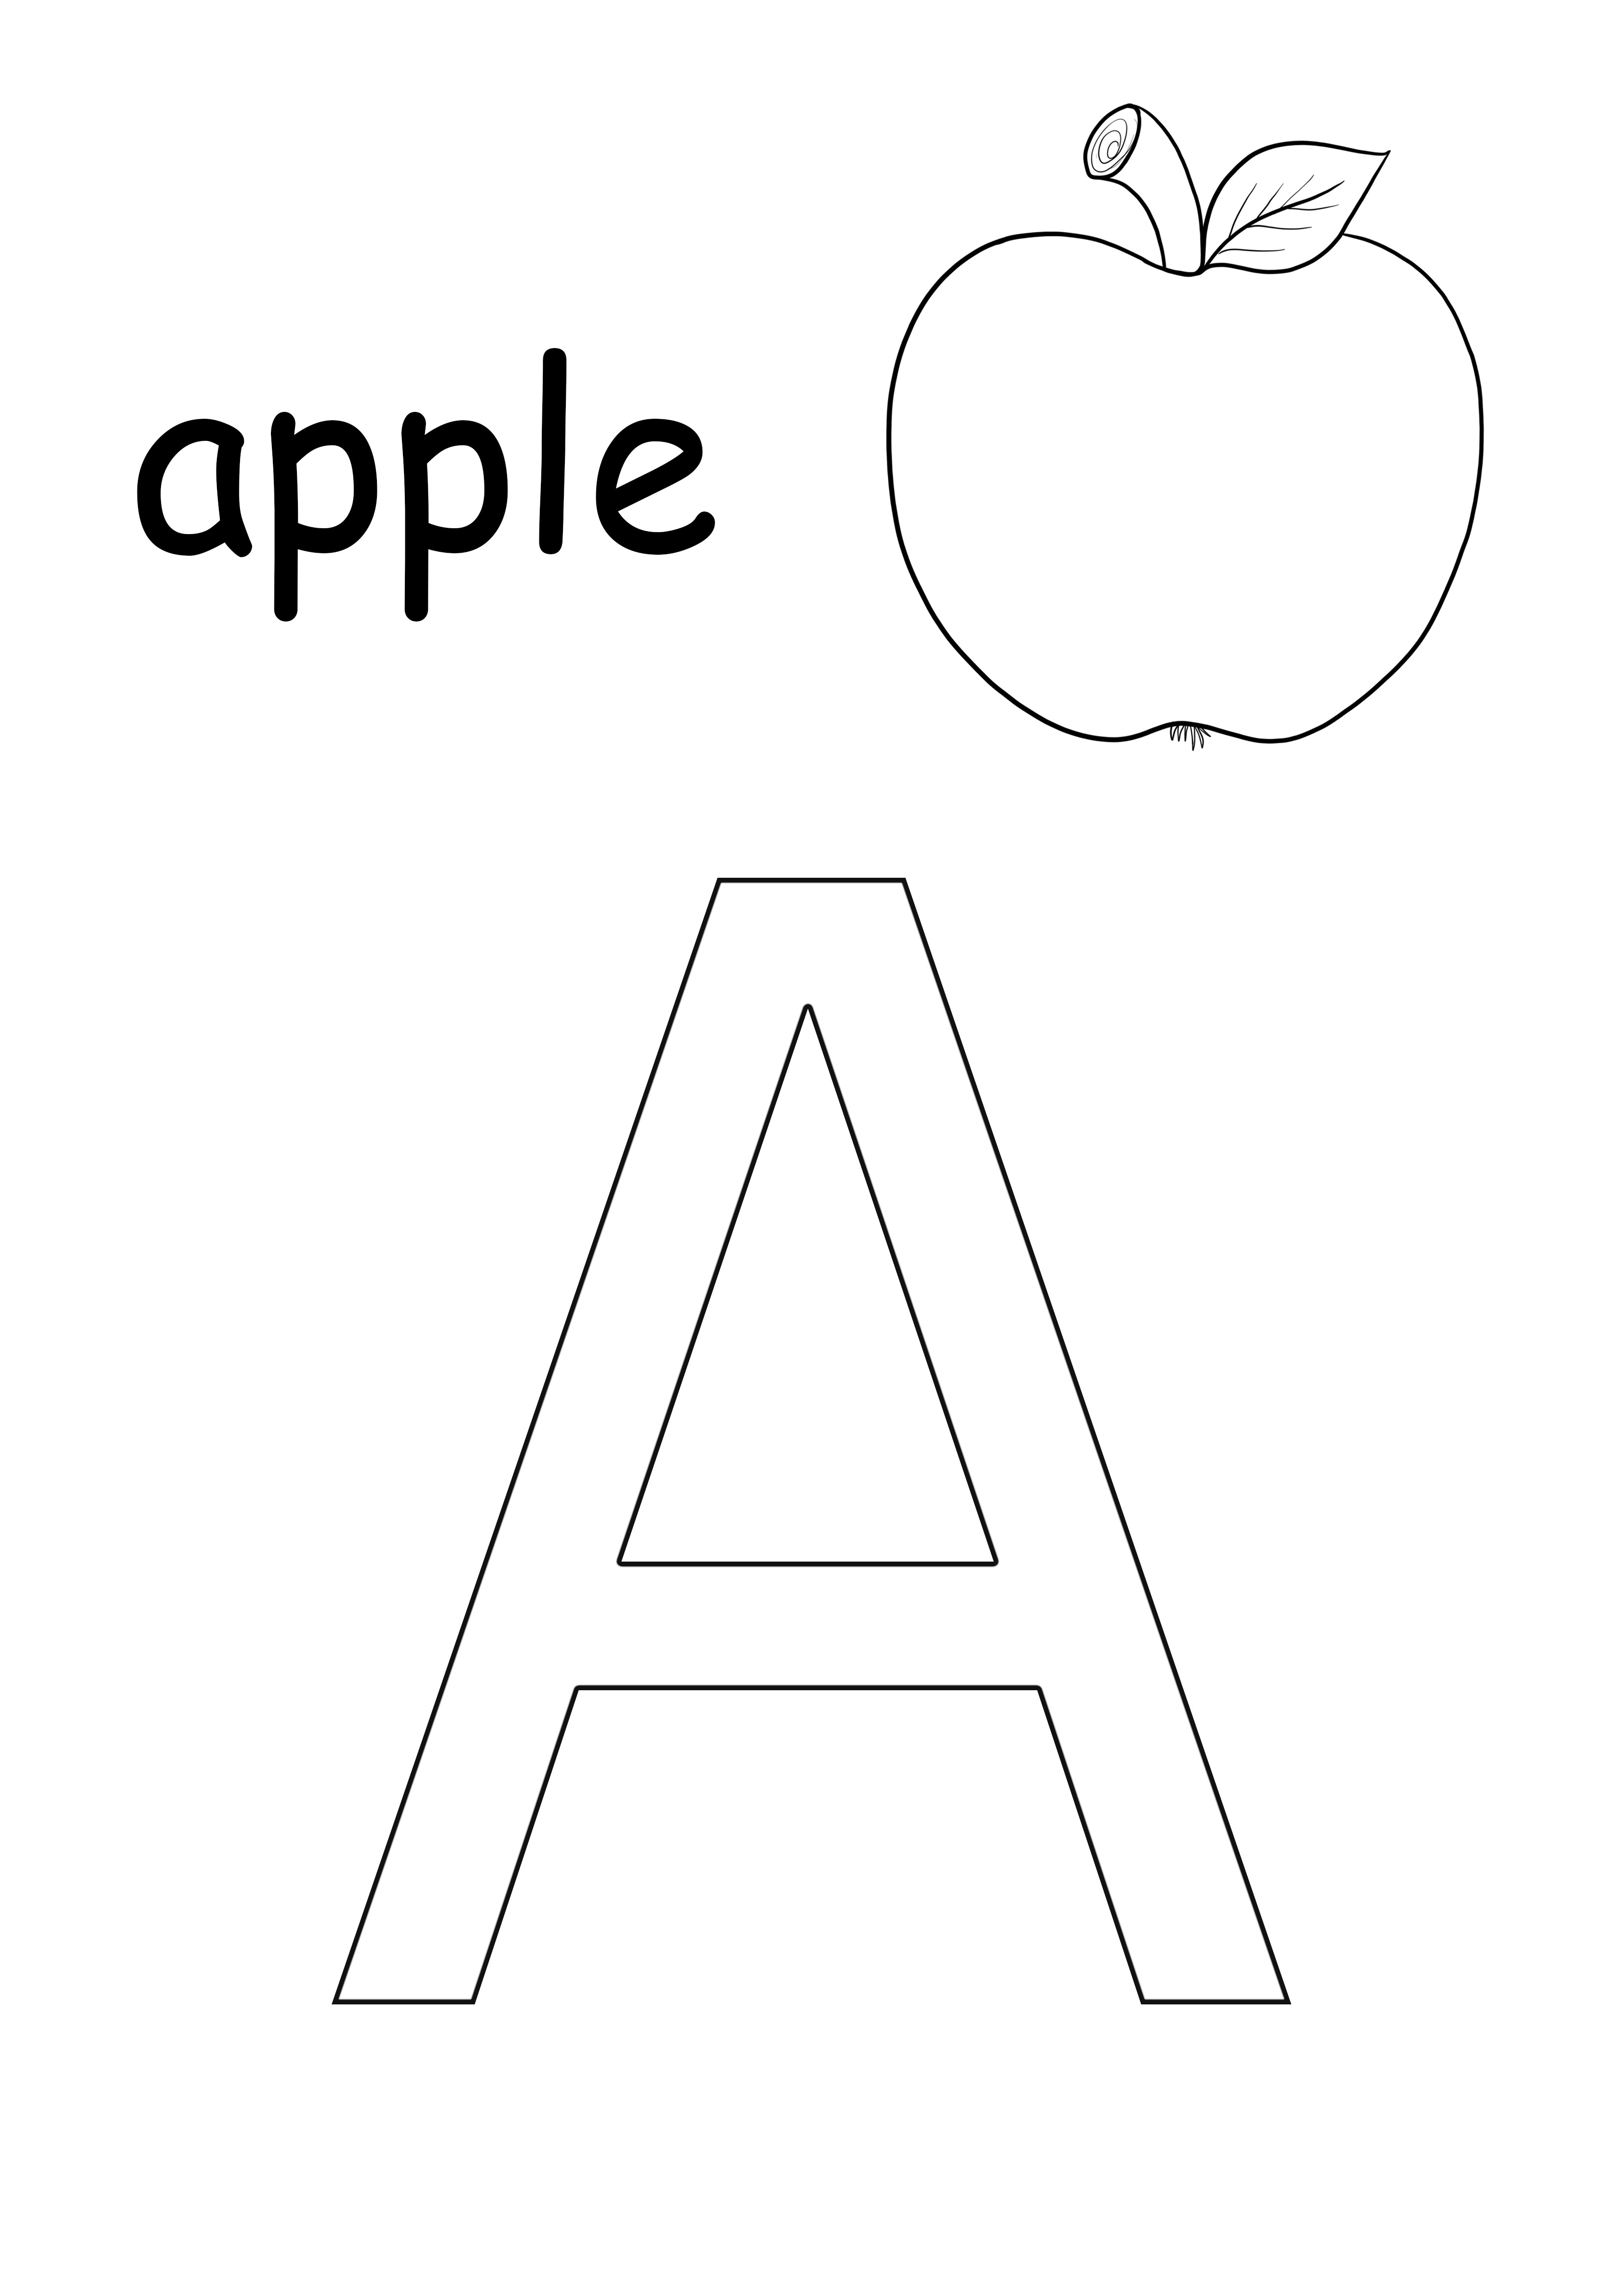 Lettera A-mela frutta-foglio stampabile senza parole minuscole